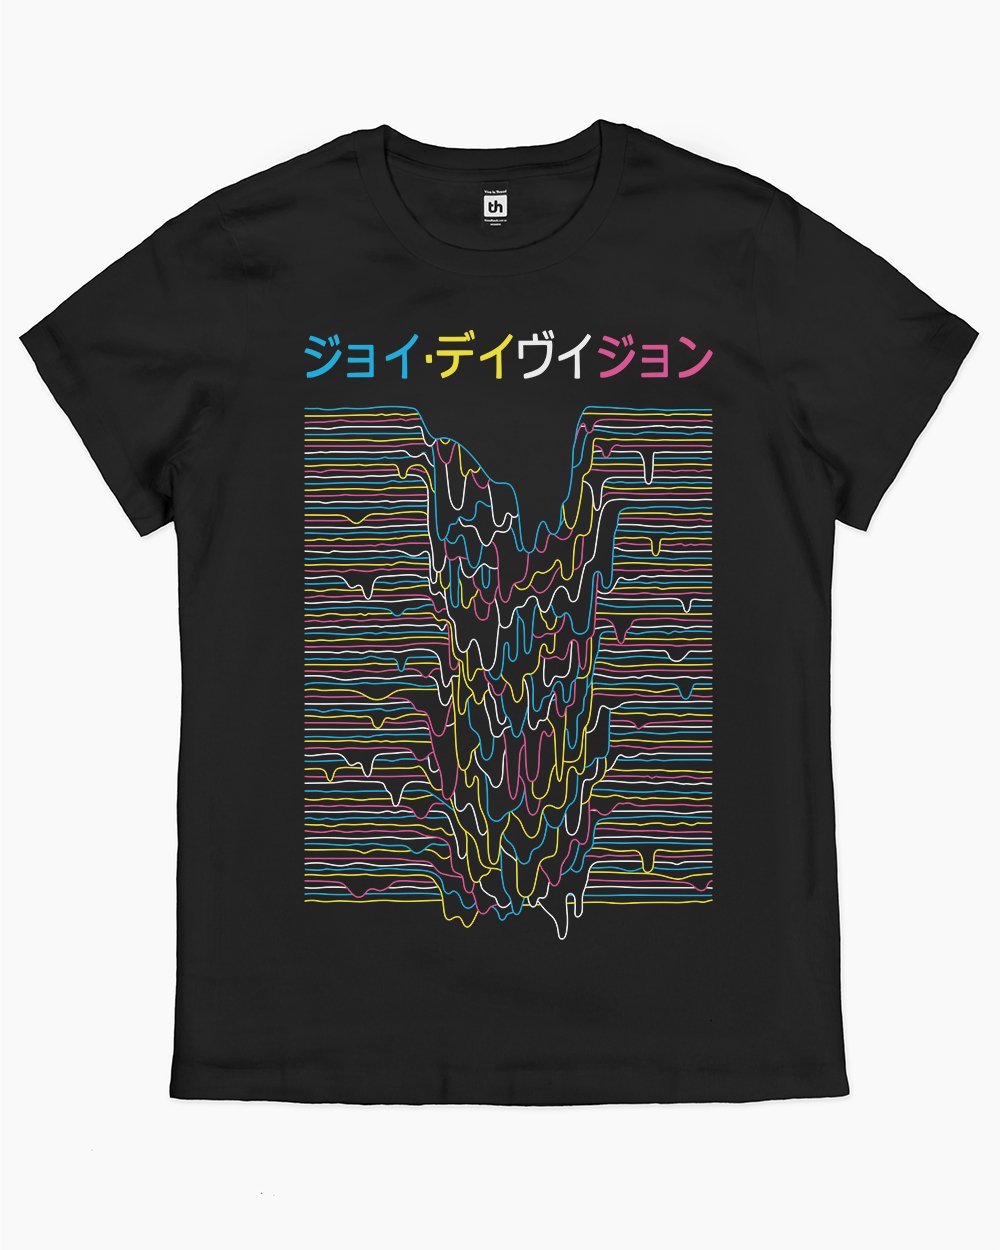 Melting Pop Culture Vaporwave T-Shirt Australia Online #colour_black